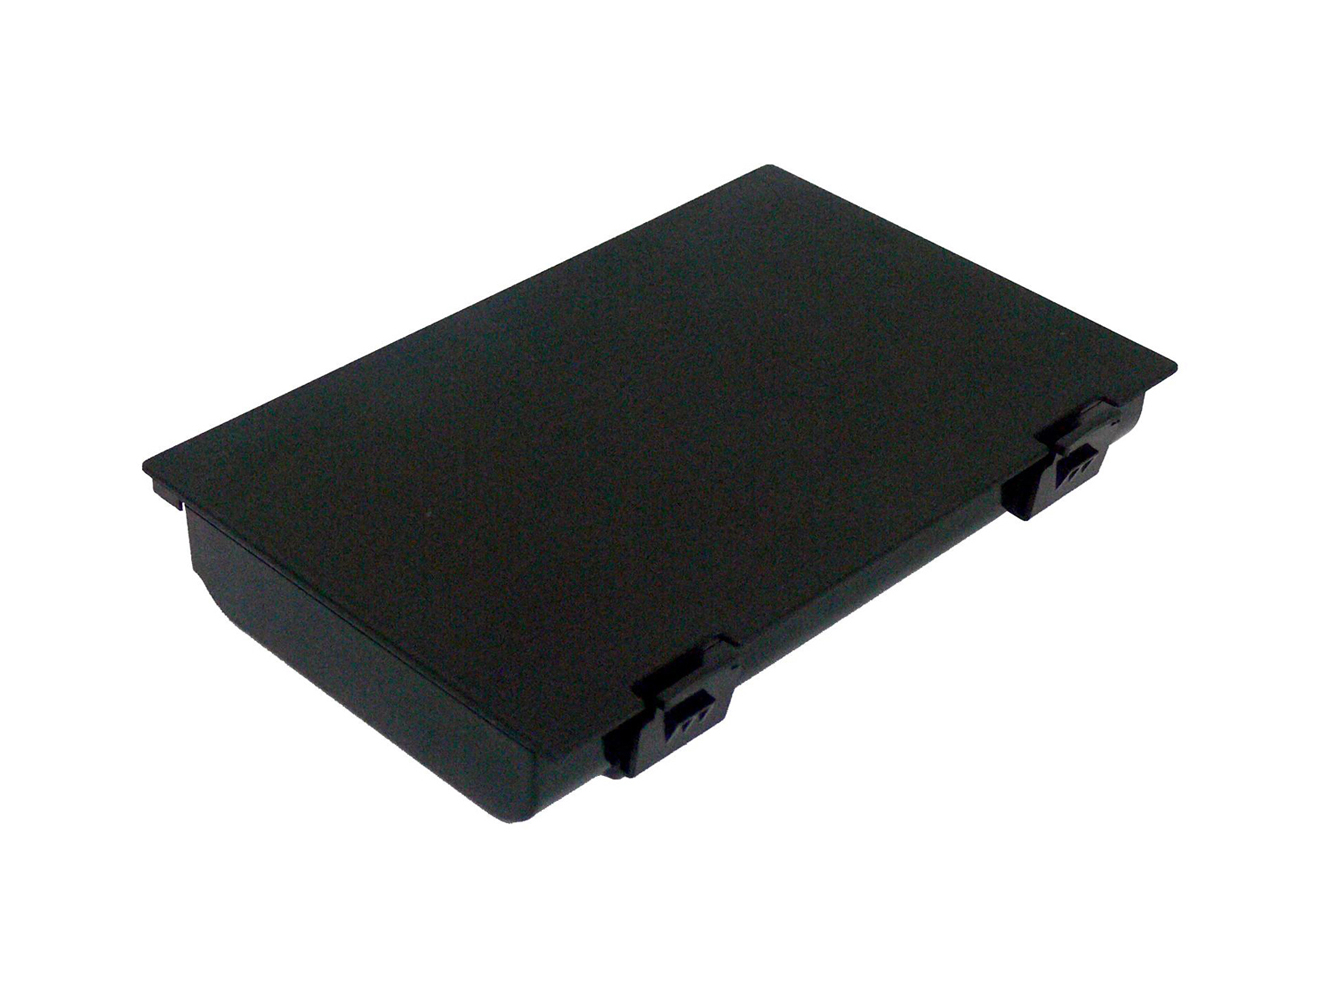 Sostituzione compatibile per batteria portatile FUJITSU-SIEMENS CELSIUS H250, LifeBook E8410, Lifebook E8420